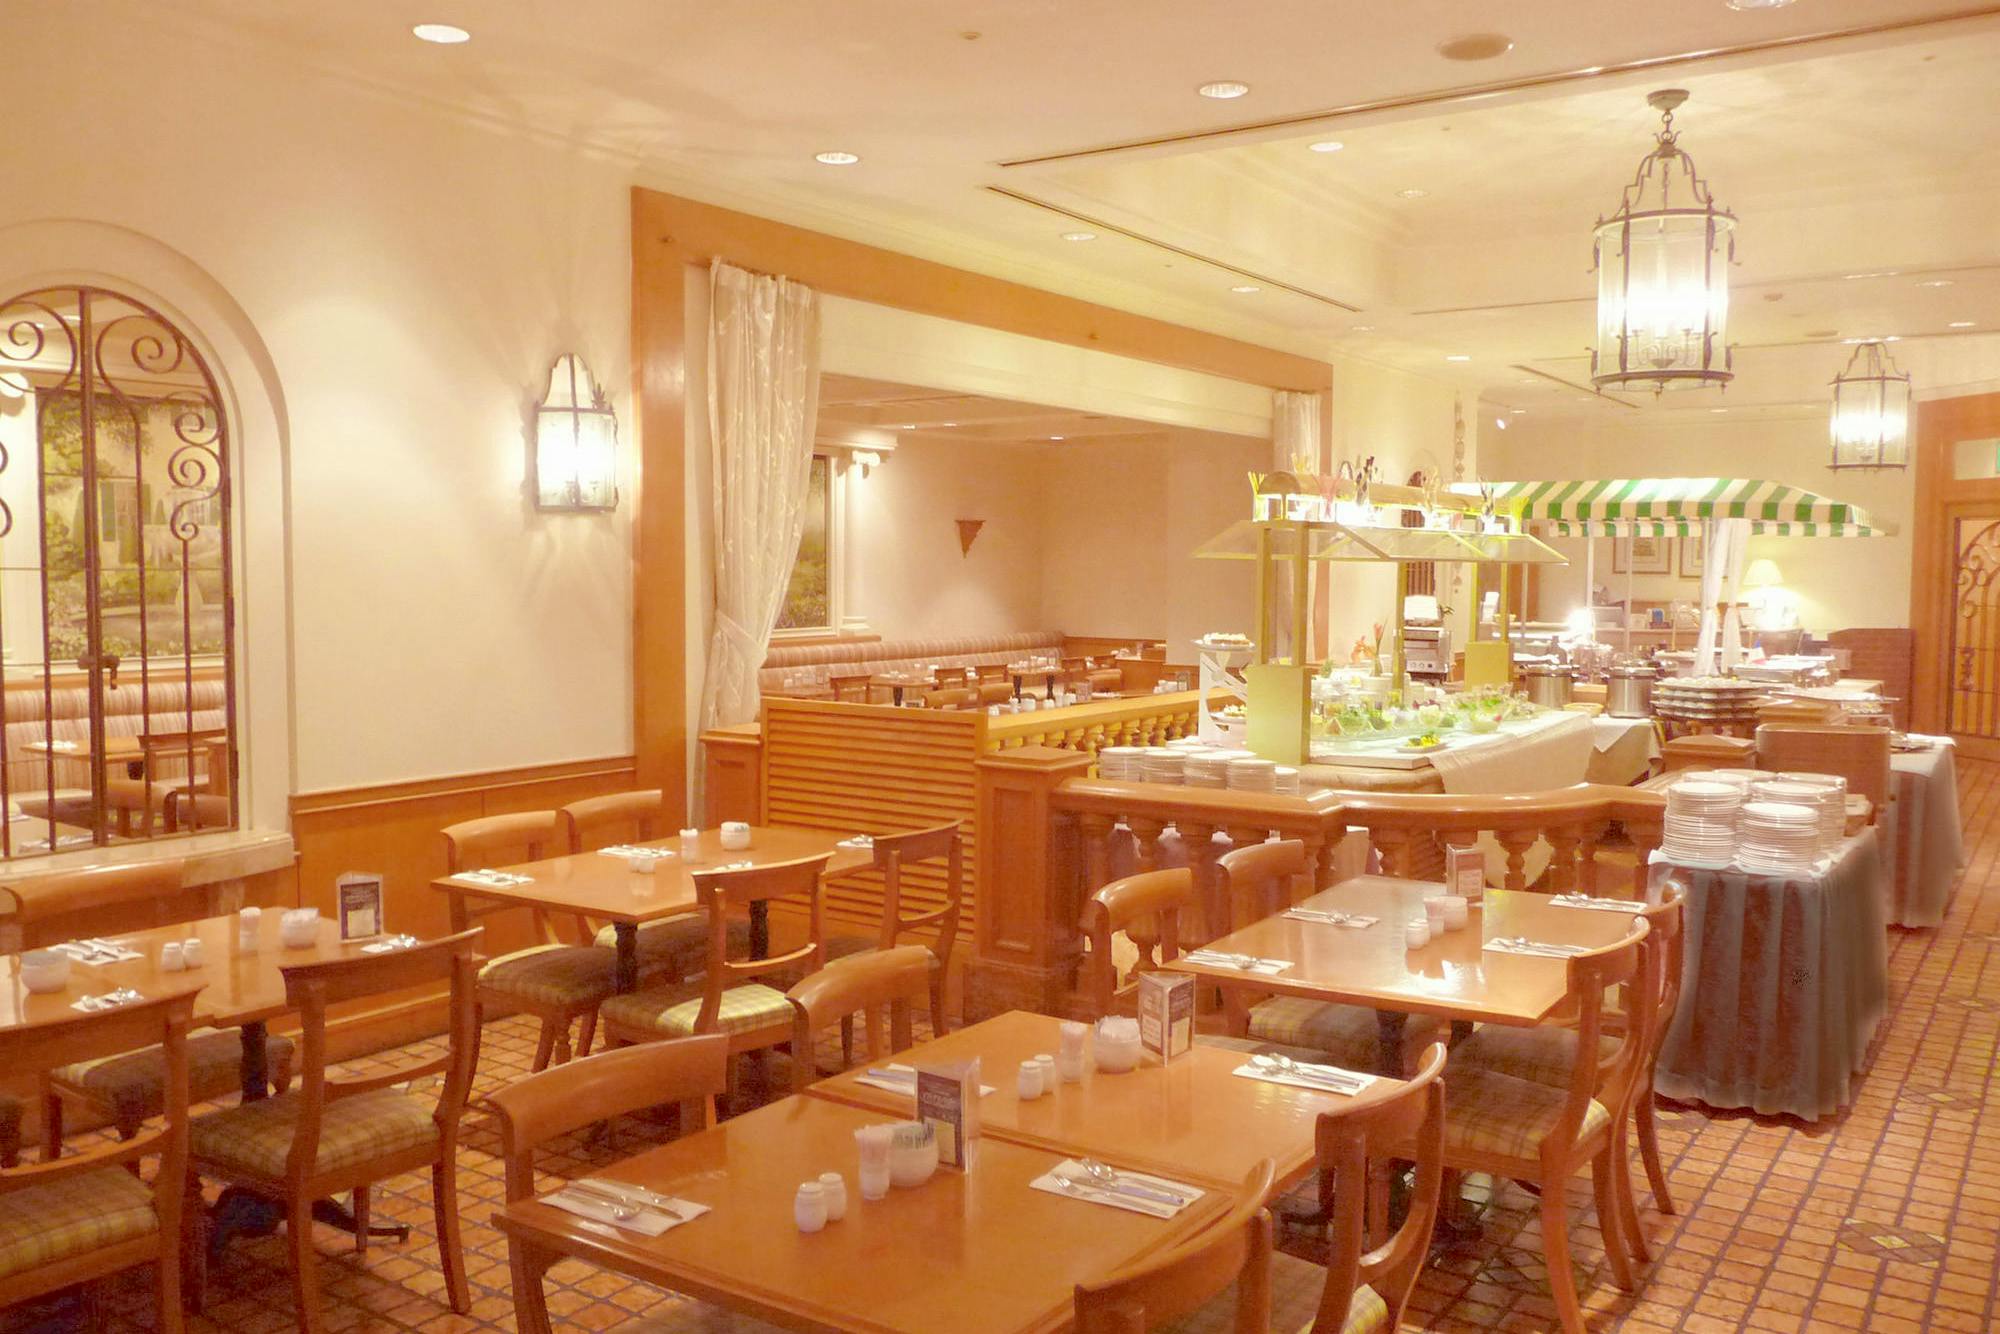 立川グルメ レストラン21選 絶対行きたいおすすめレストラン Okaimonoモール レストラン